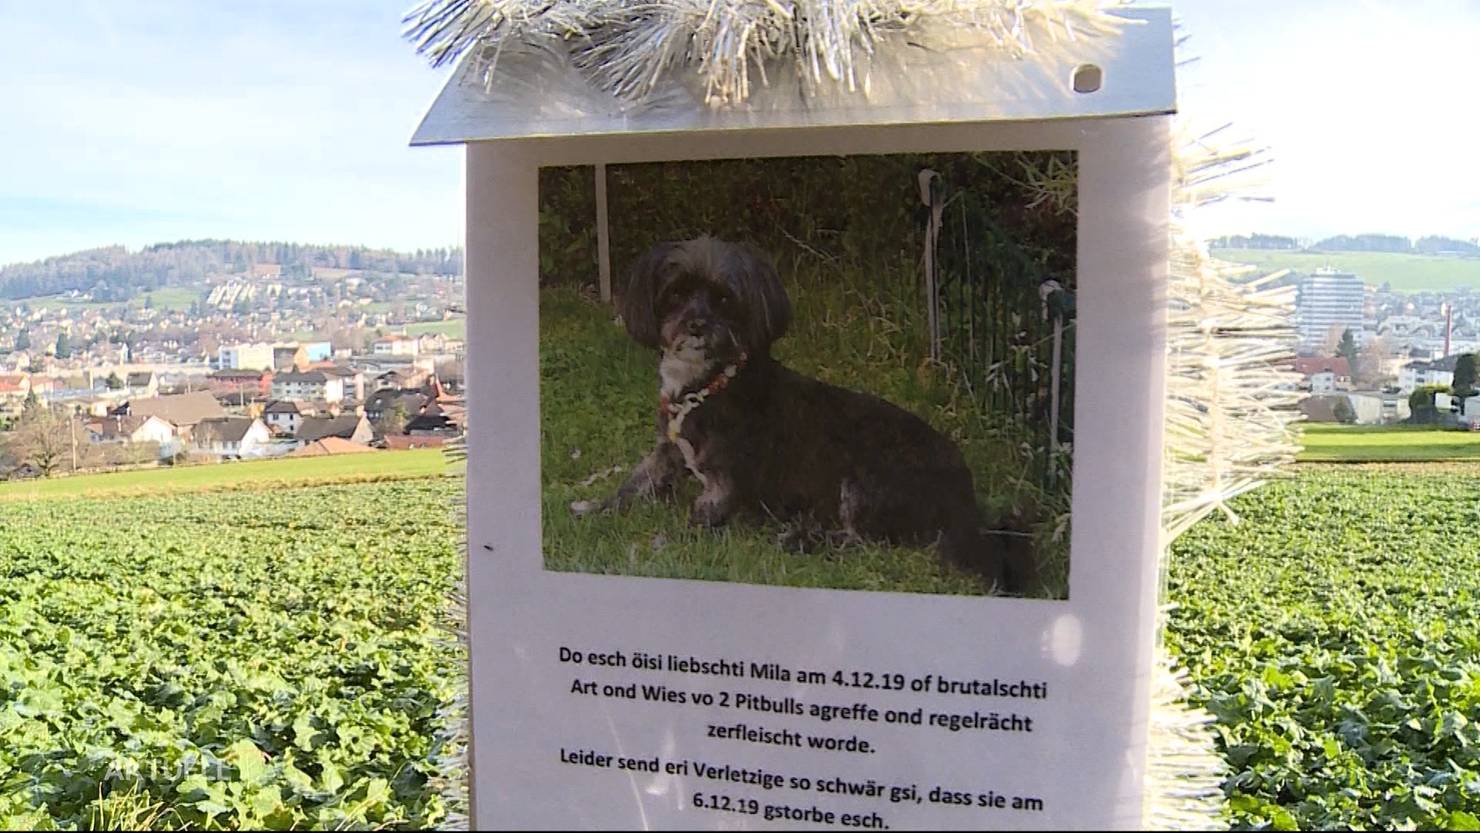 Totgebissen Kleiner Hund stirbt nach PitbullAttacke Tele M1